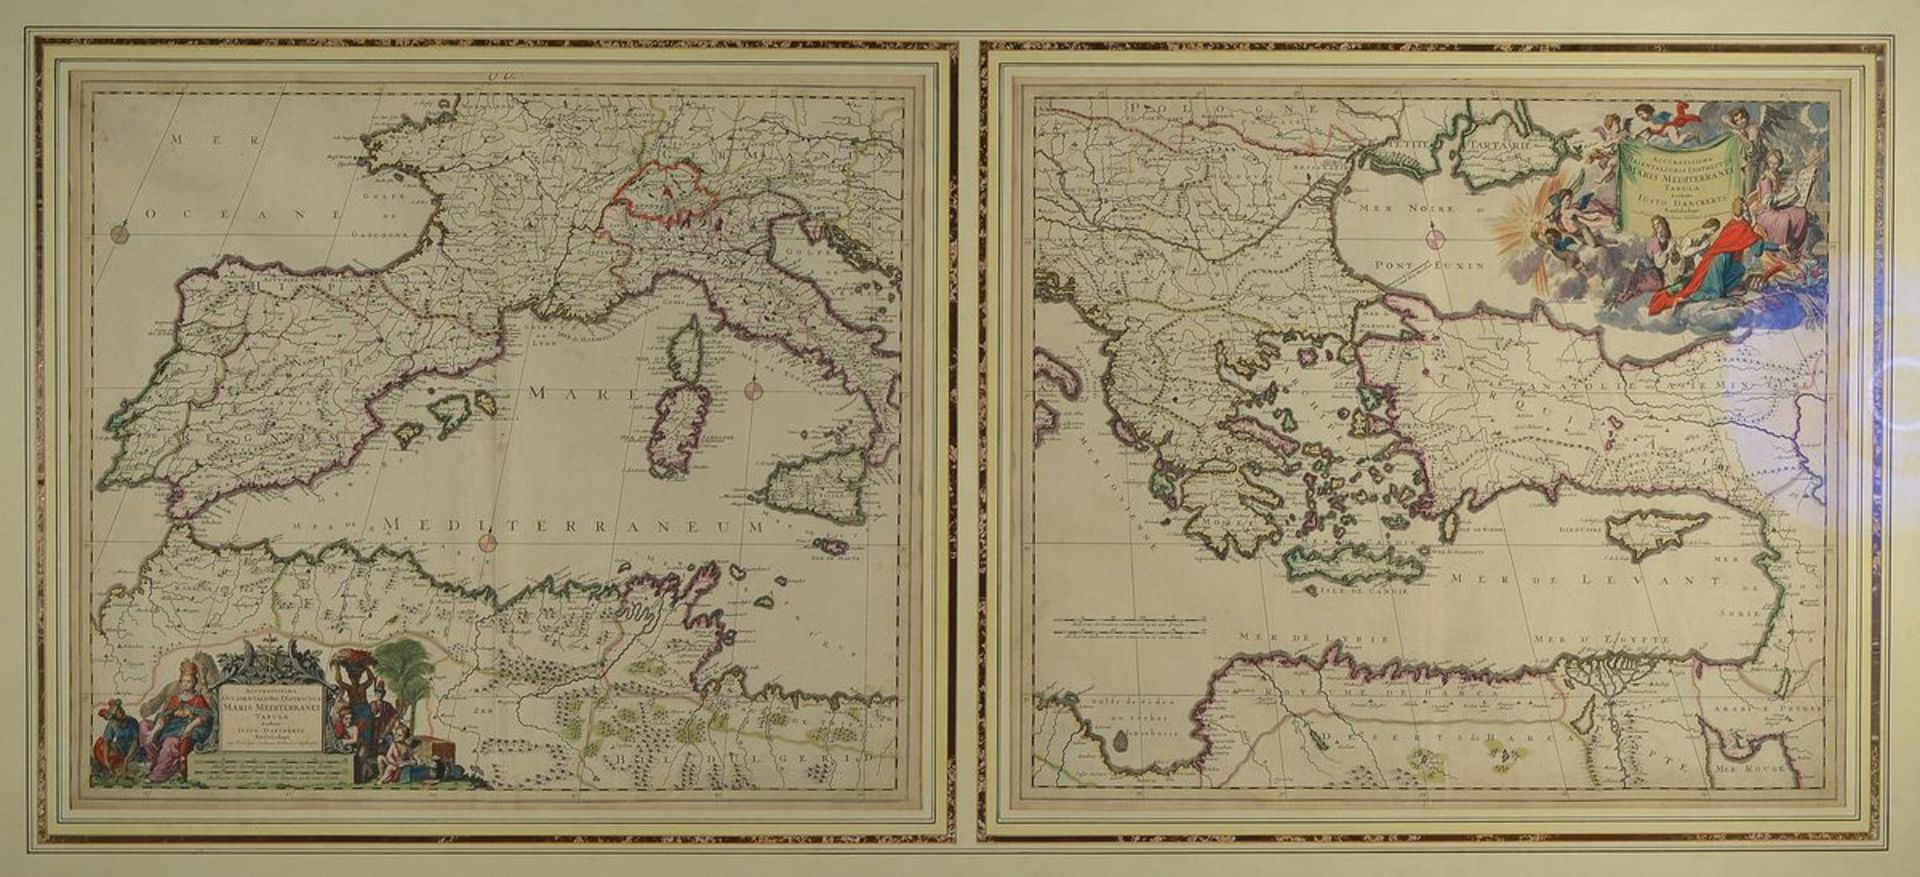 Justus Danckerts, 1635-1701, zwei Kupferstichkarten in einem großen Rahmen, Mittelmeer, West- und